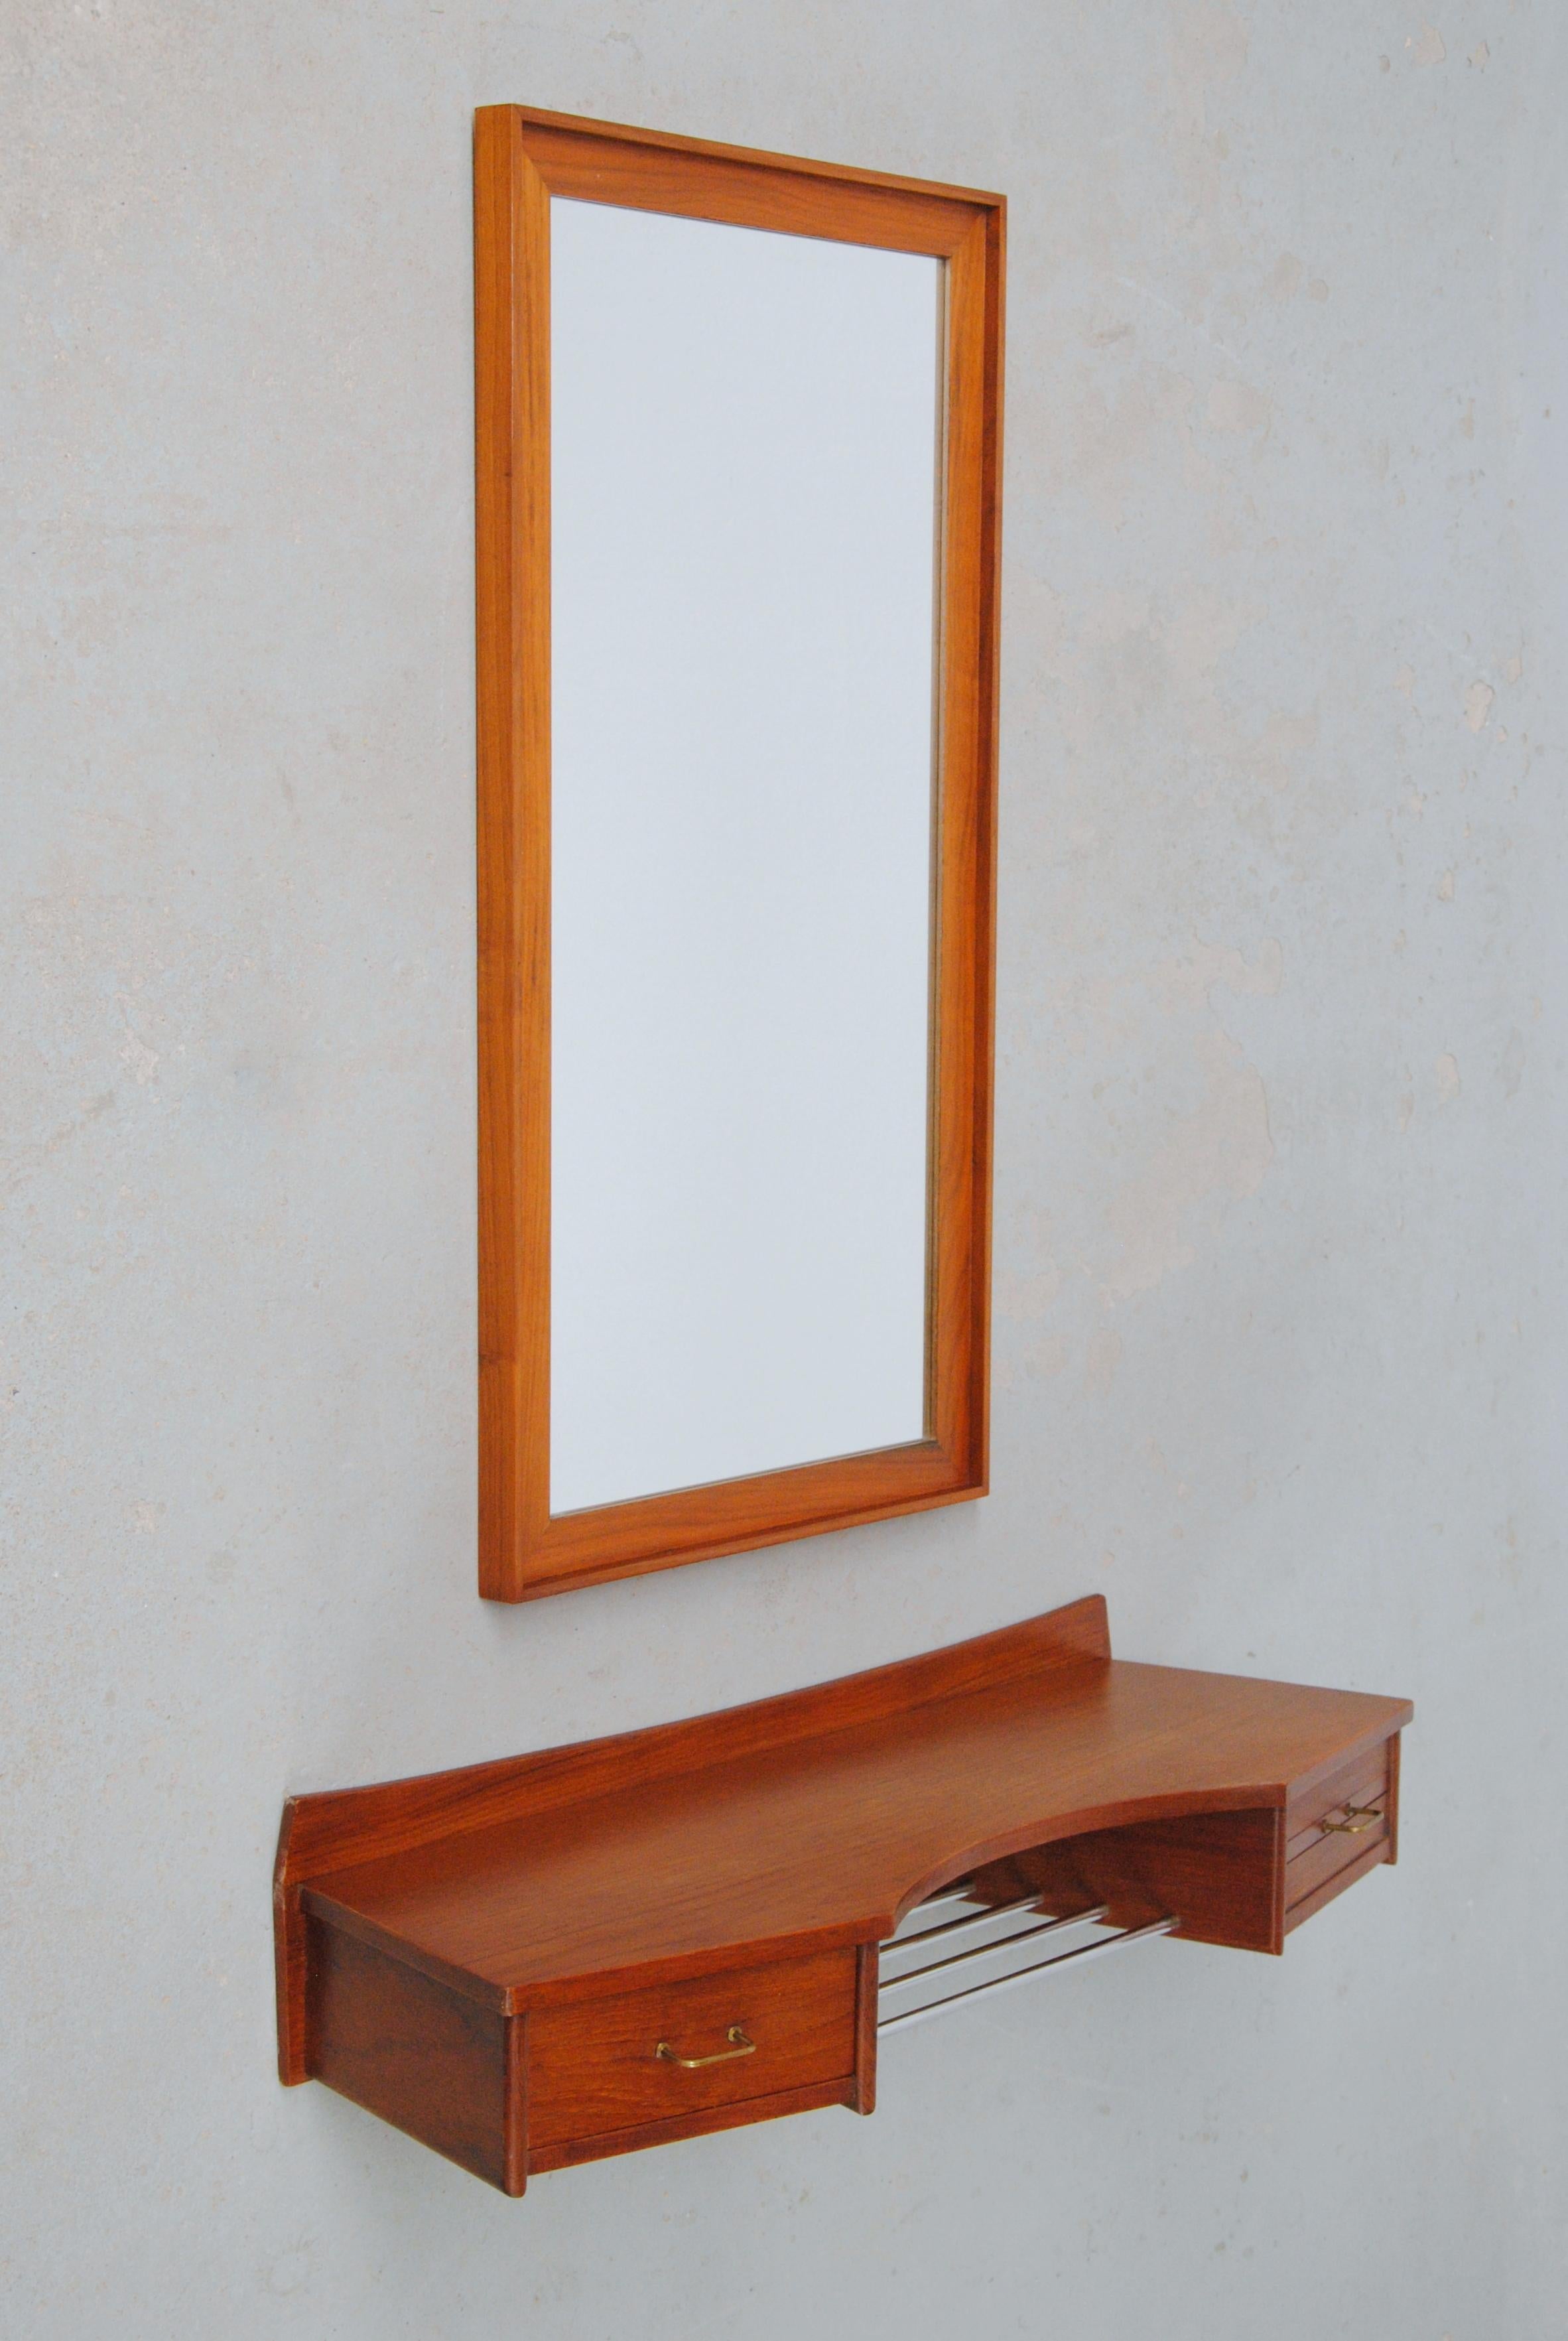 ensemble de toilettes Danishteak des années 1950 entièrement restauré avec plateau flottant et miroirs

Rare ensemble de toilette / vanity danois inventif et imaginatif en teck composé d'une table flottante en teck avec tiroir, un petit miroir